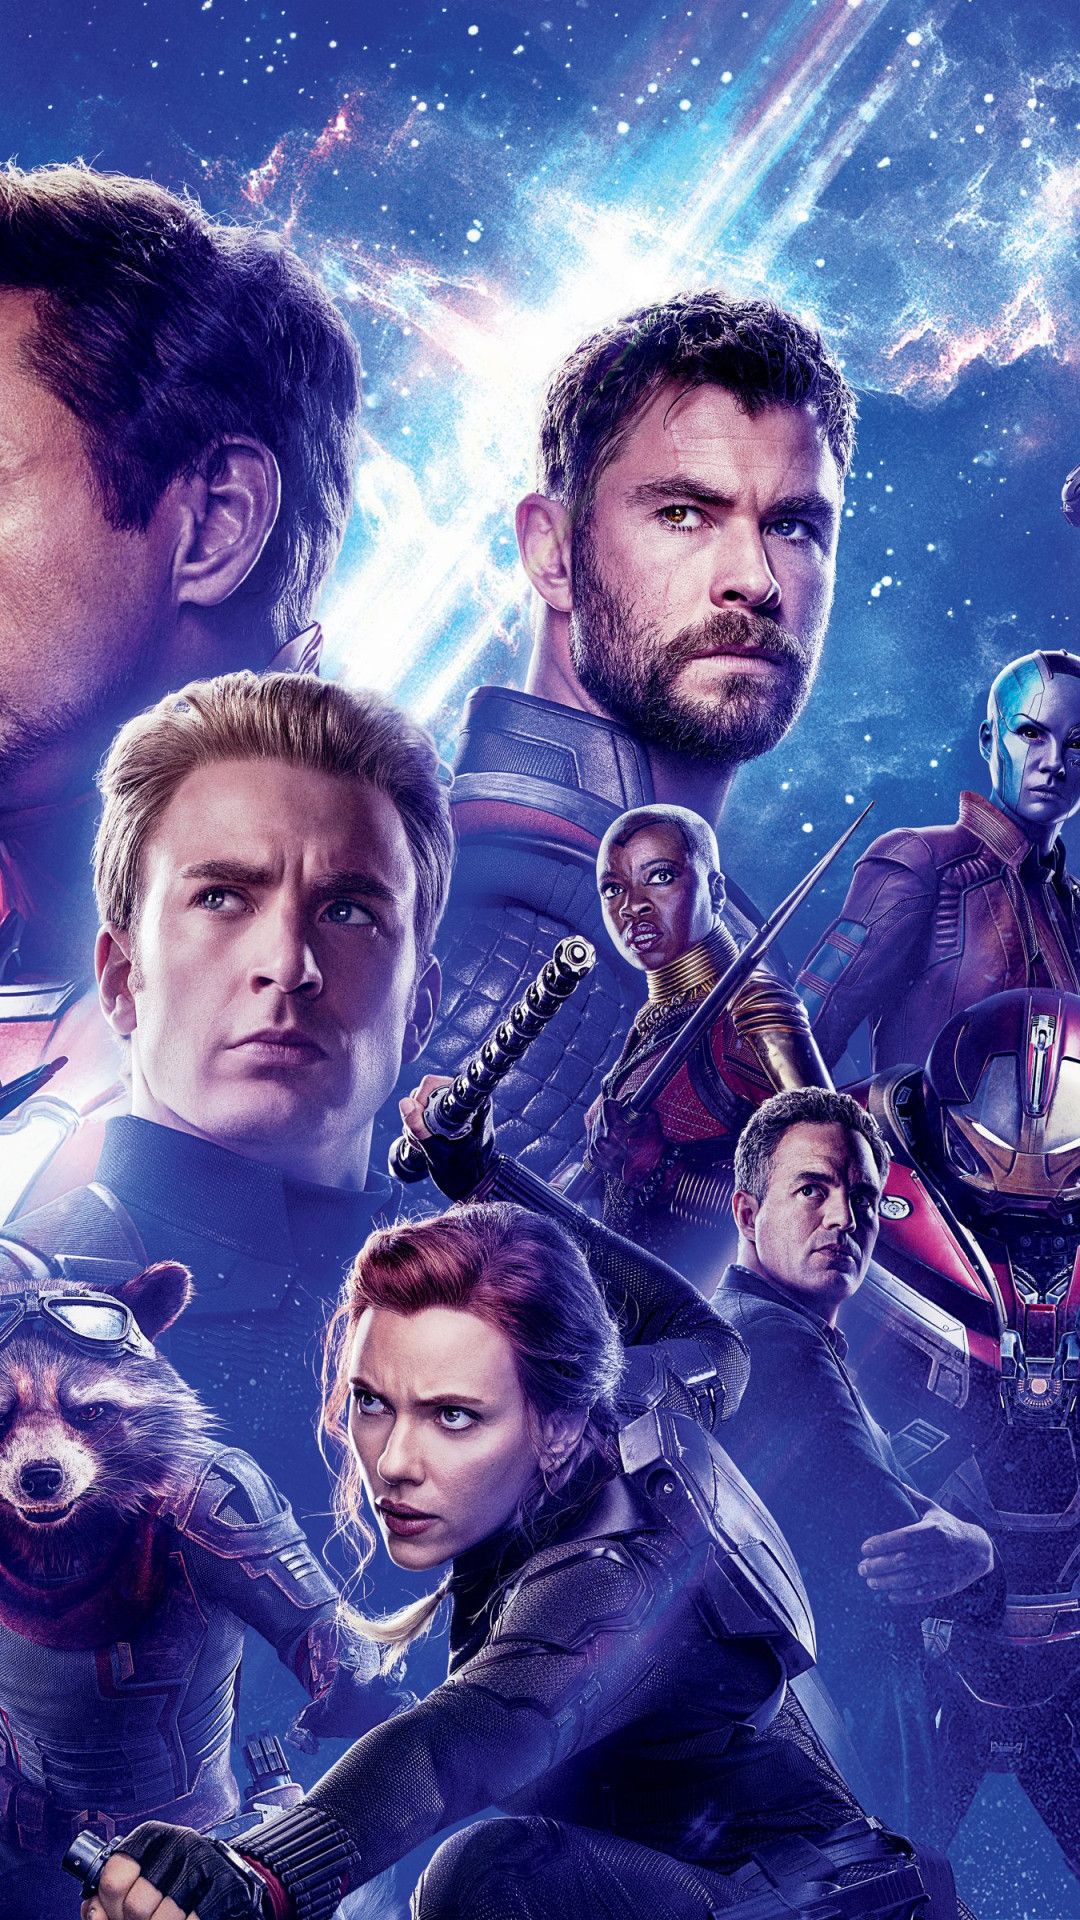 Download wallpaper: Avengers: Endgame 1080x1920